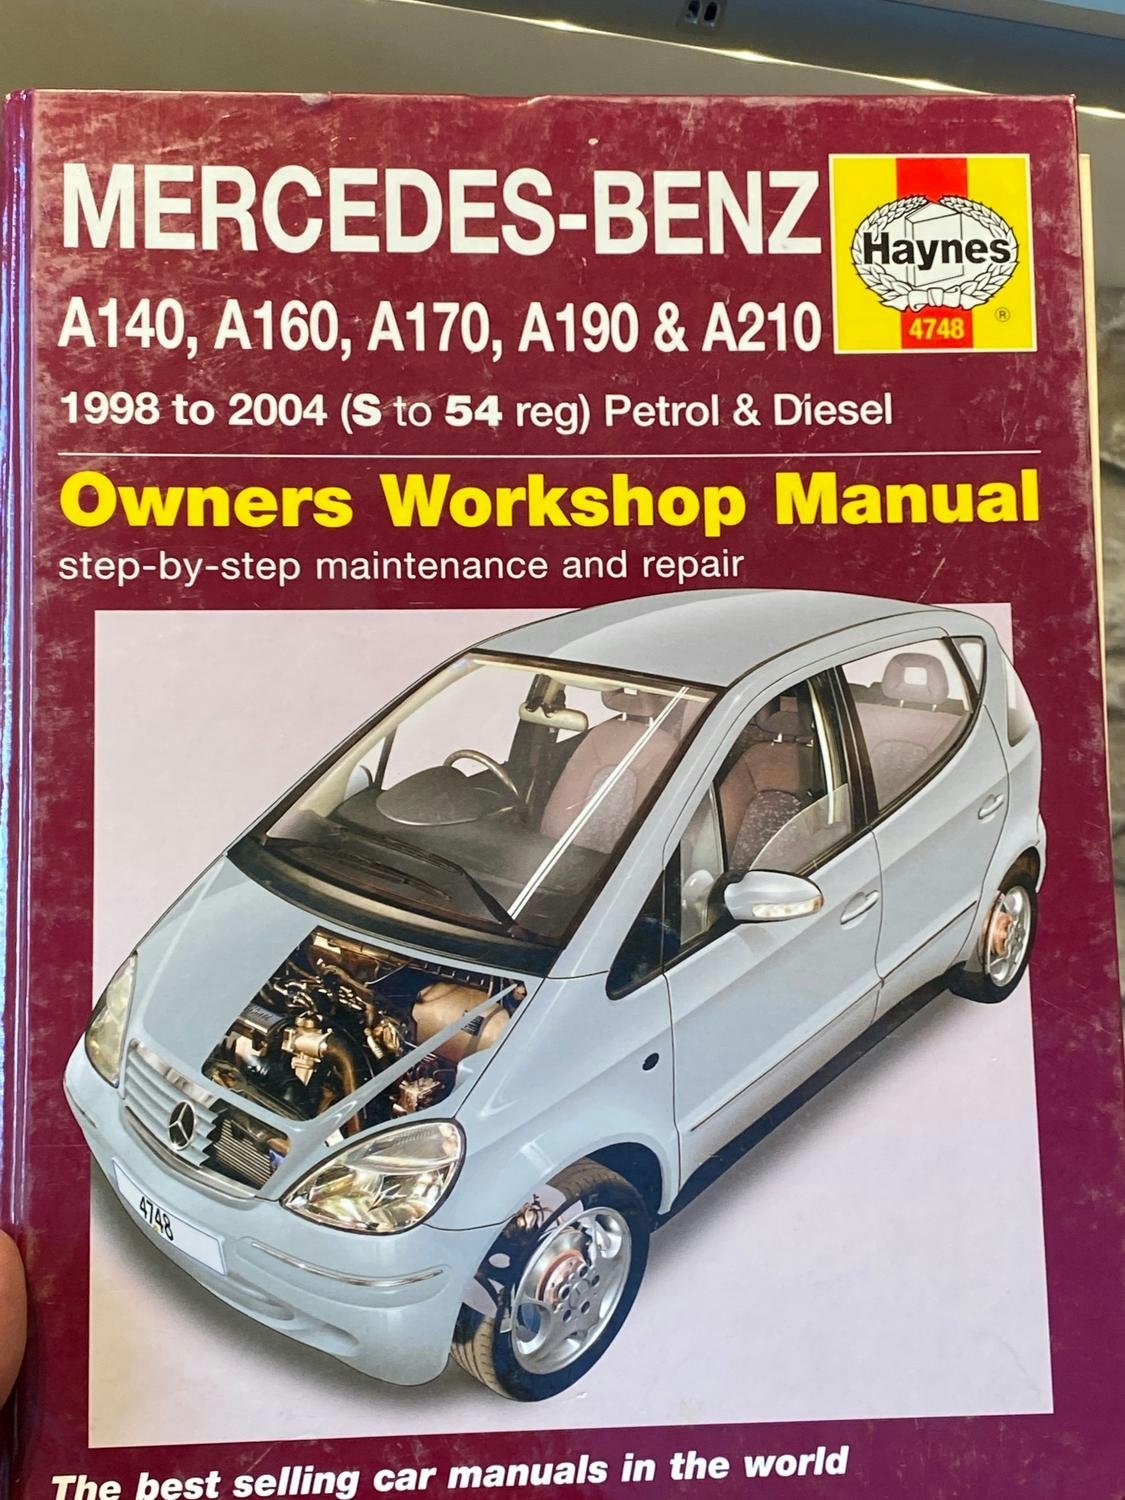 Haynes Reparationshandbok: Mercedes-Benz A140, A160, A170, A190, A210 98-04 Eng.